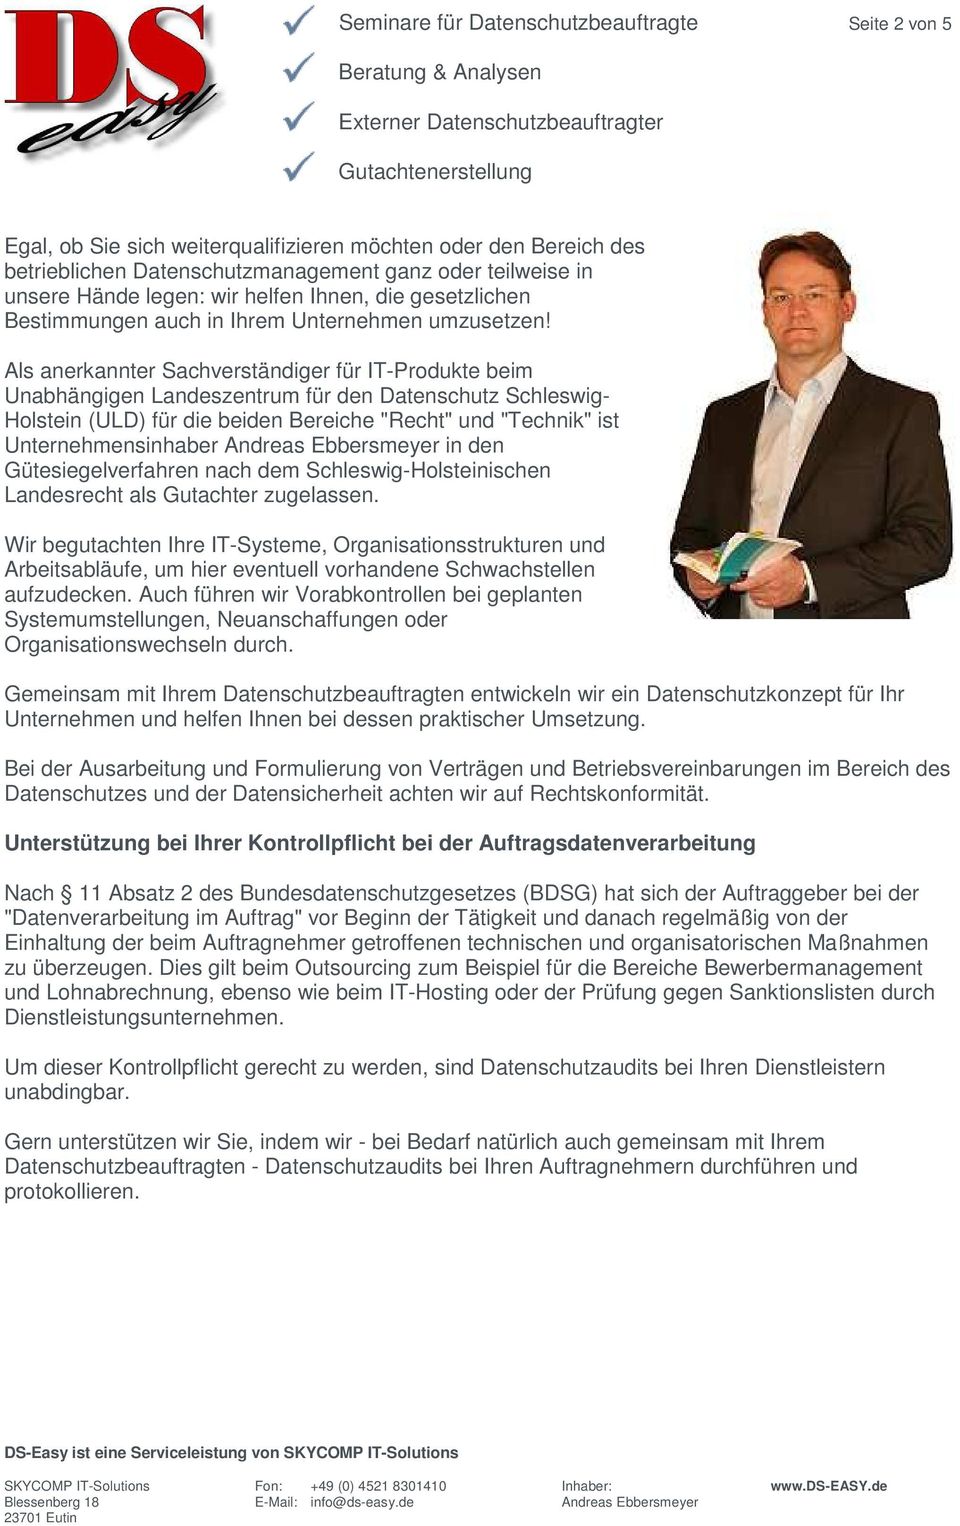 Als anerkannter Sachverständiger für IT-Produkte beim Unabhängigen Landeszentrum für den Datenschutz Schleswig- Holstein (ULD) für die beiden Bereiche "Recht" und "Technik" ist Unternehmensinhaber